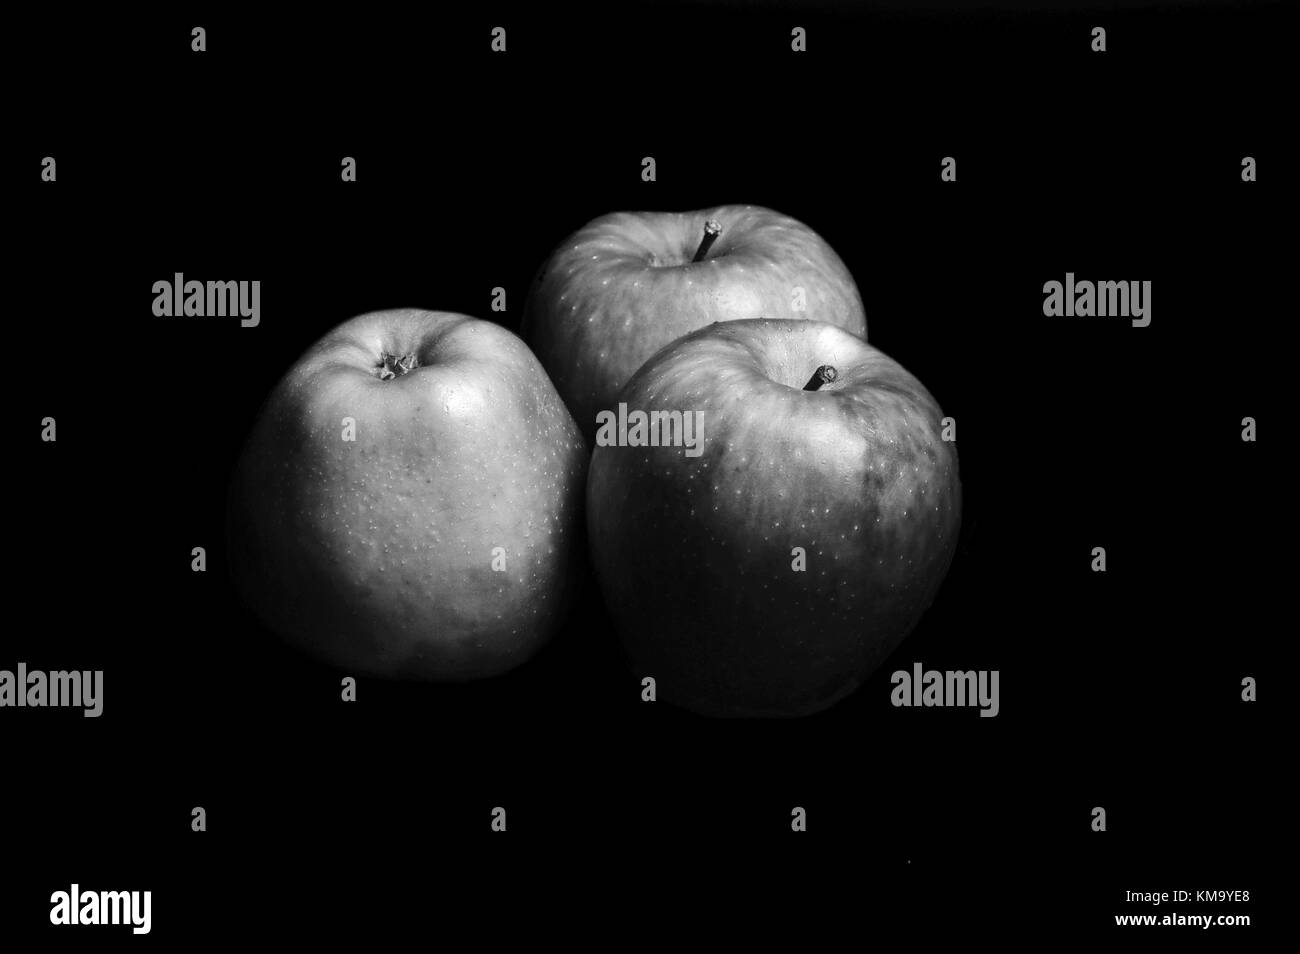 Trhee Äpfel mit schwarz und weiß, Frucht Stockfoto